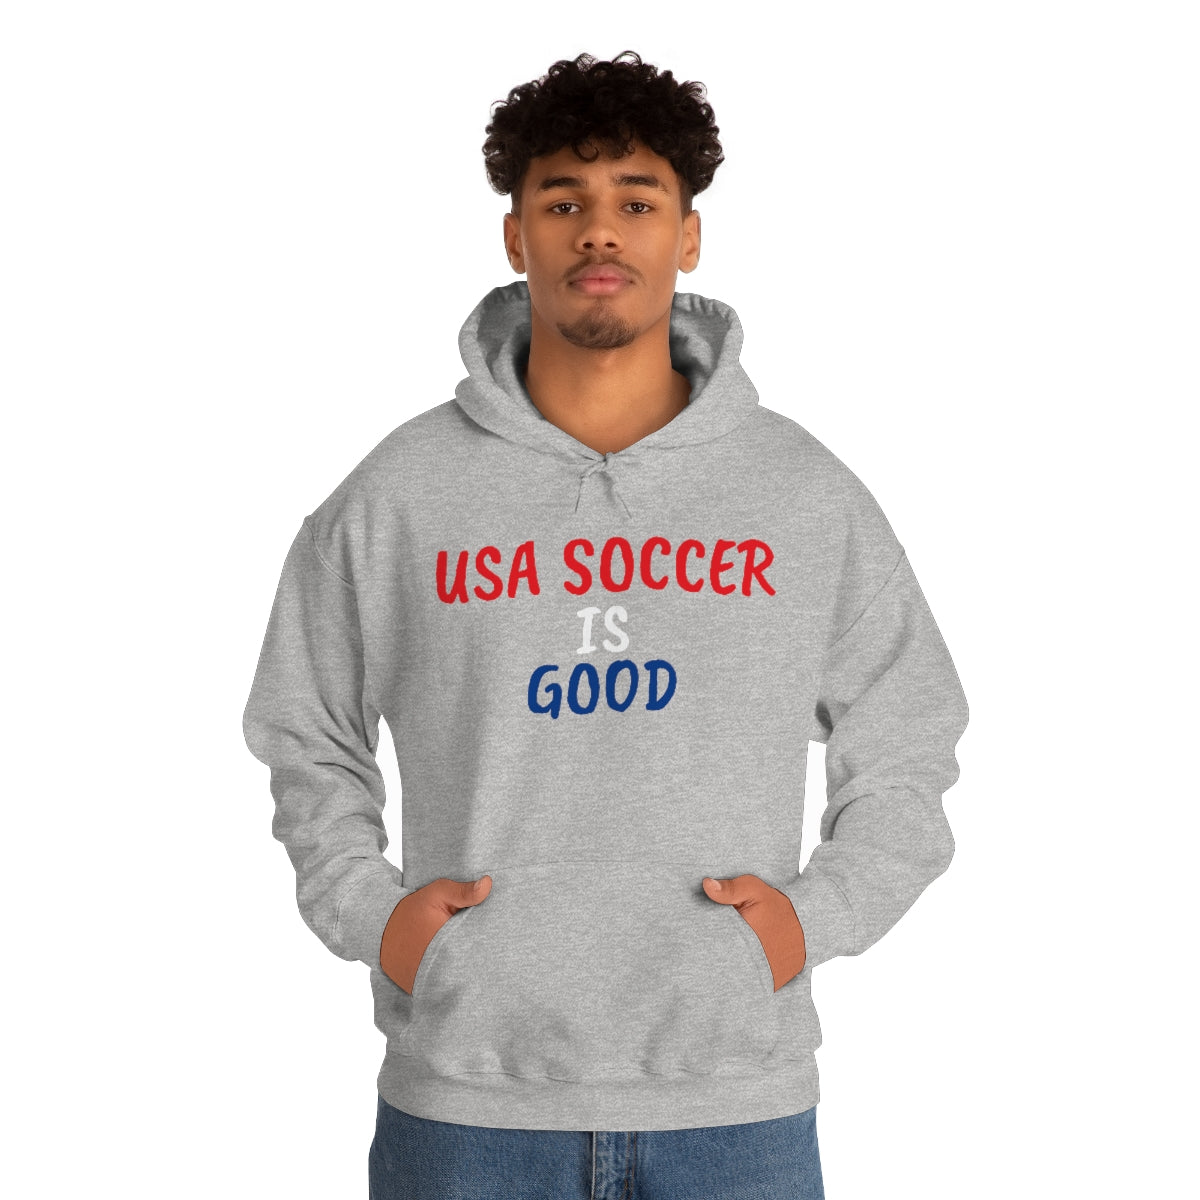 USA SOCCER IS GOOD Sweatshirt - IsGoodBrand